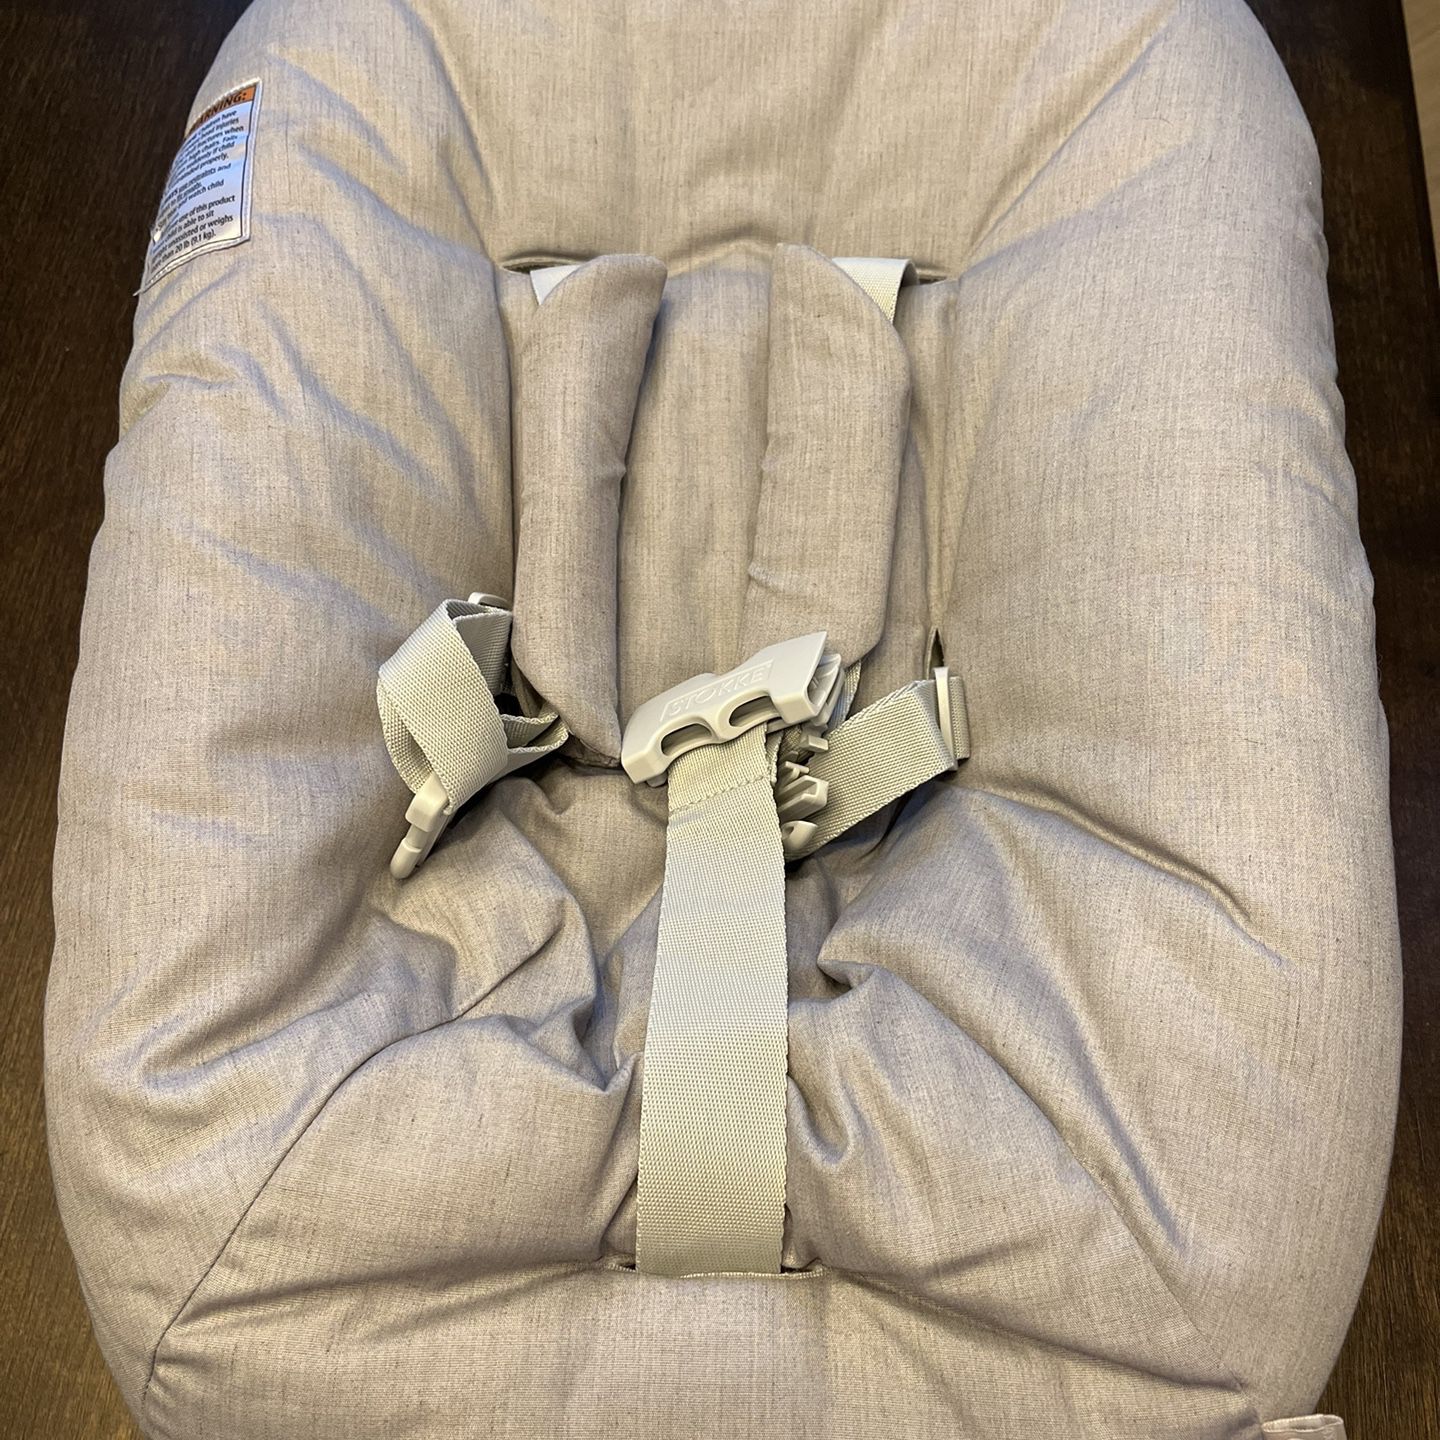 Stokke Tripp Trapp Newborn Seat